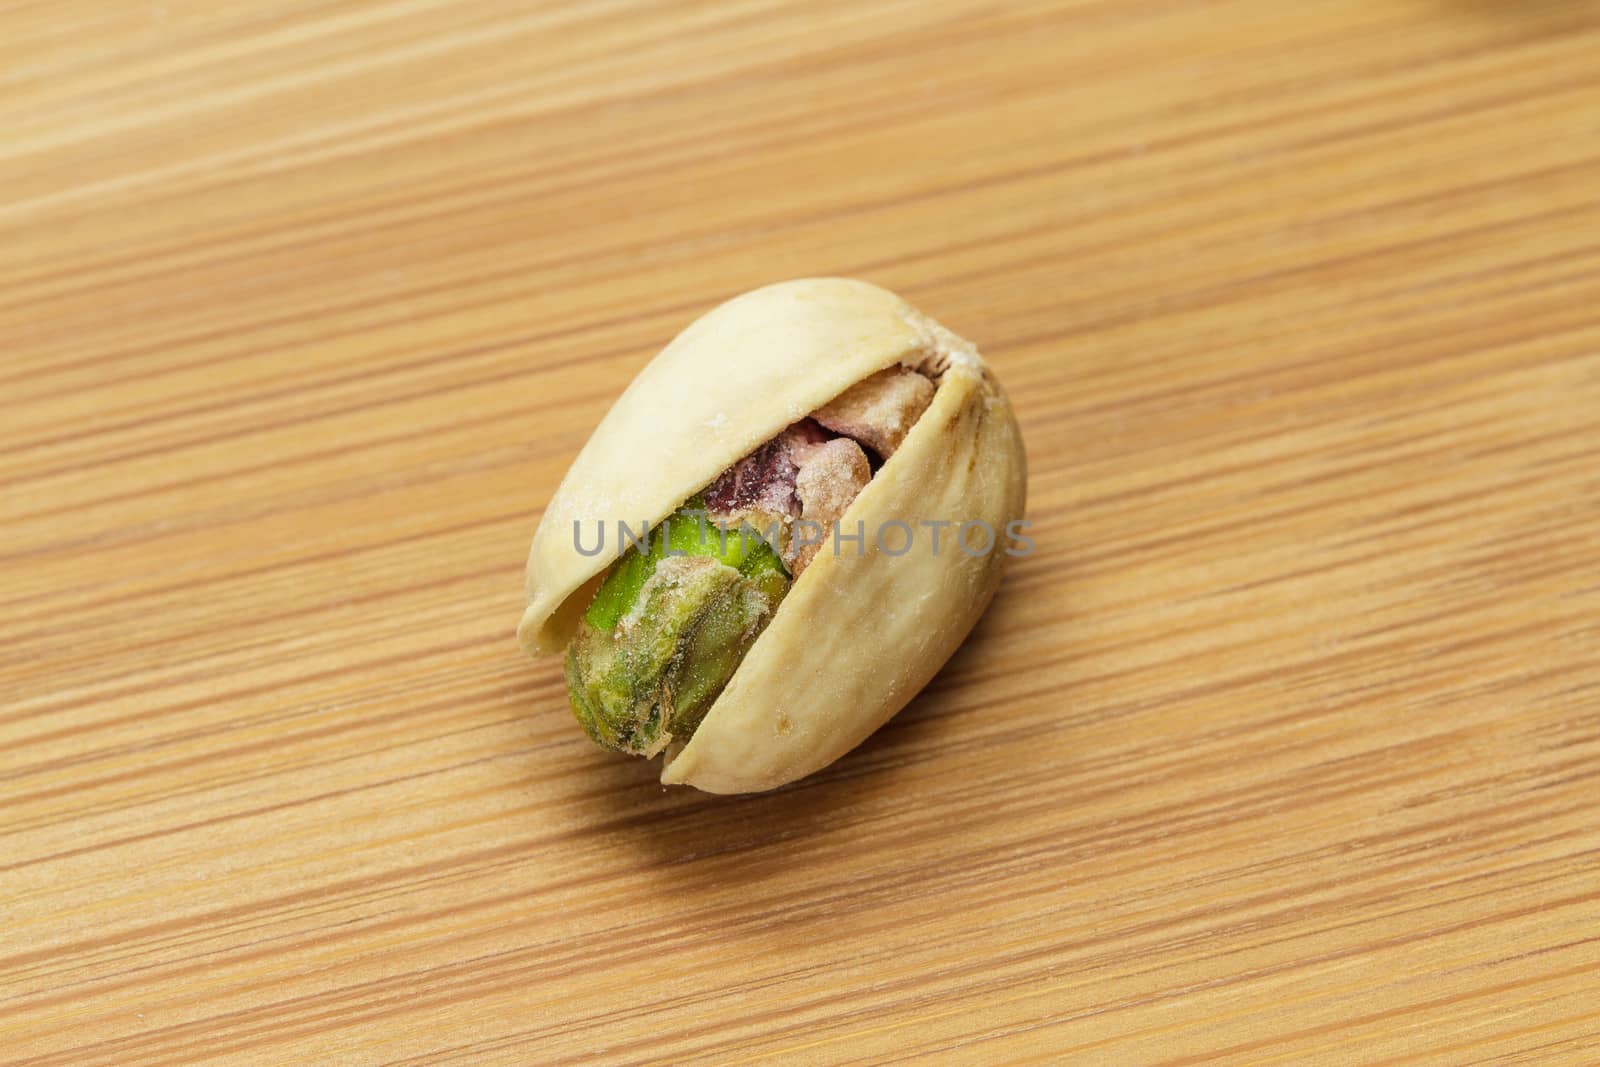 Pistachio nut on wooden board